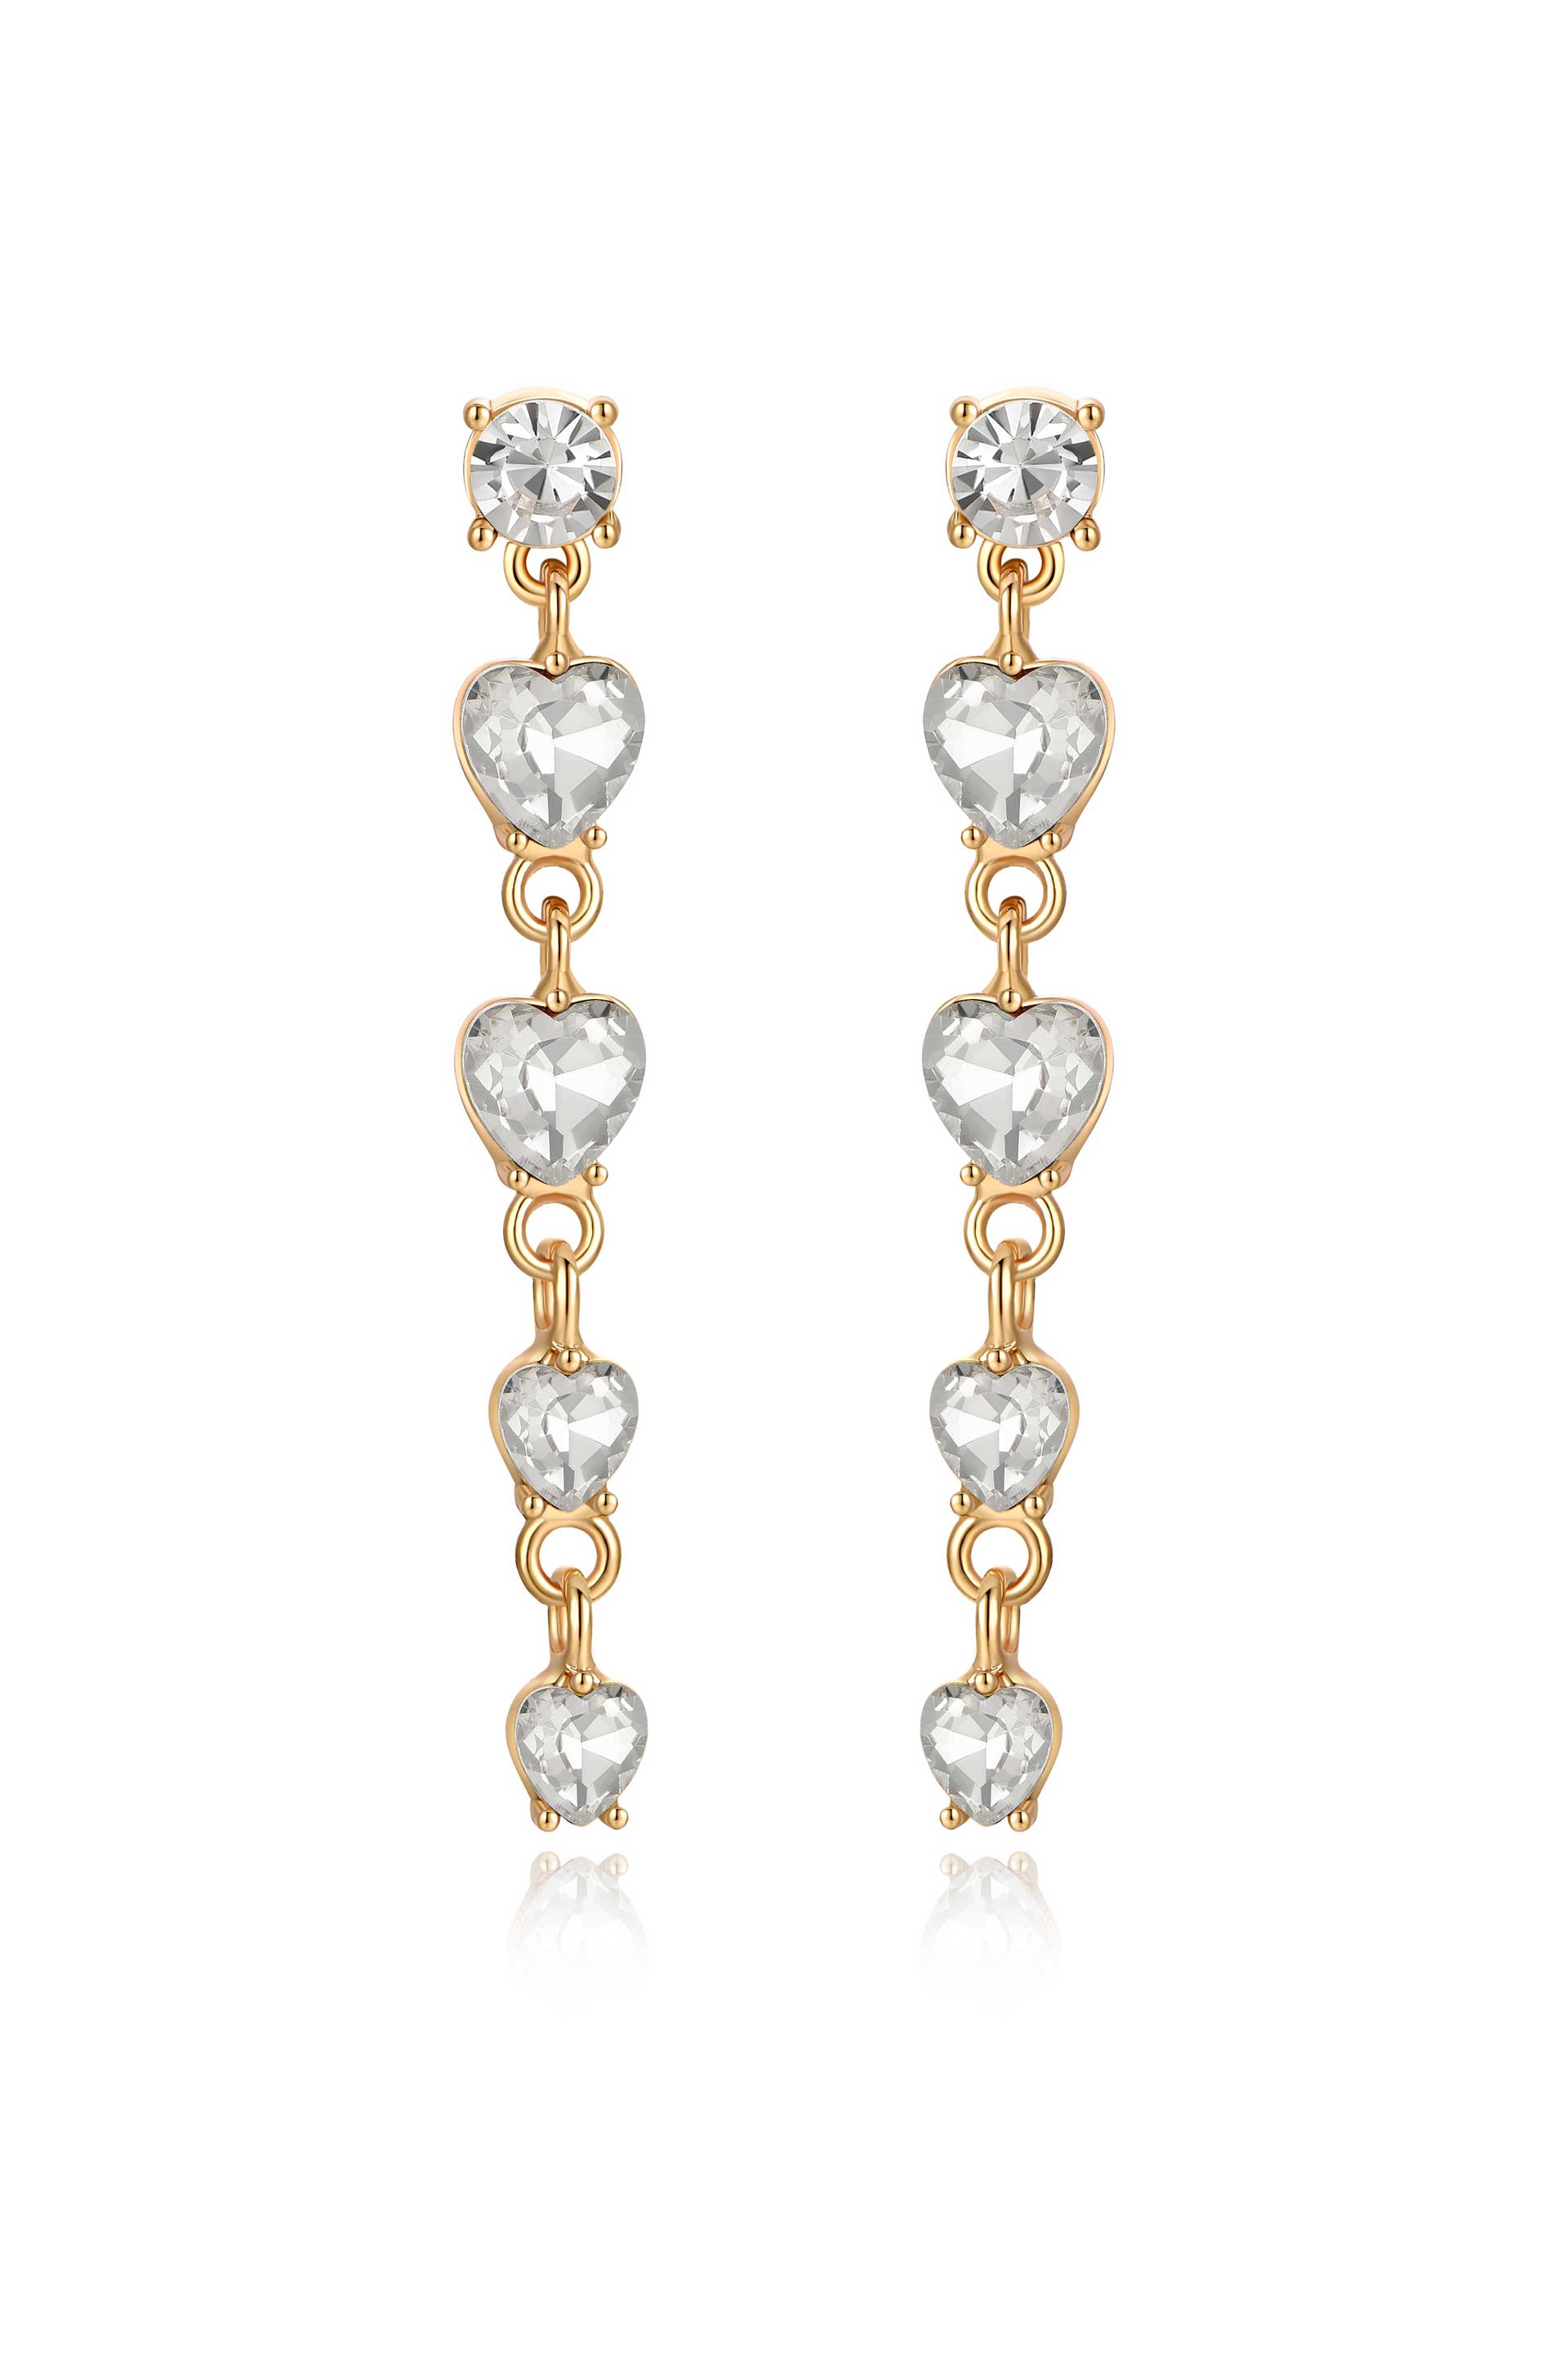 Descending Crystal Heart 18k Gold Plated Earrings